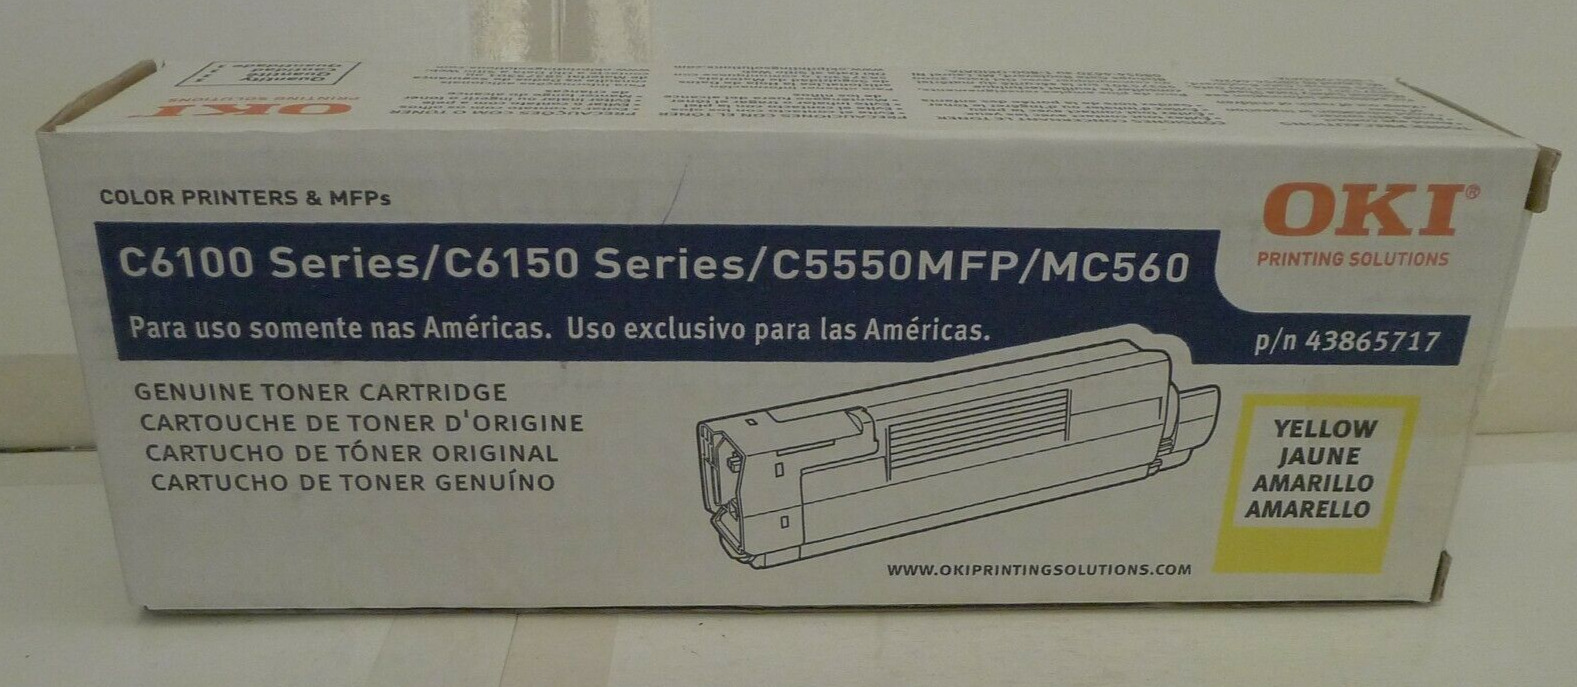 OKI 43865717 YELLOW Toner OKI C6100 Series / C6150 Series / C5550MFP / MC560 NEW